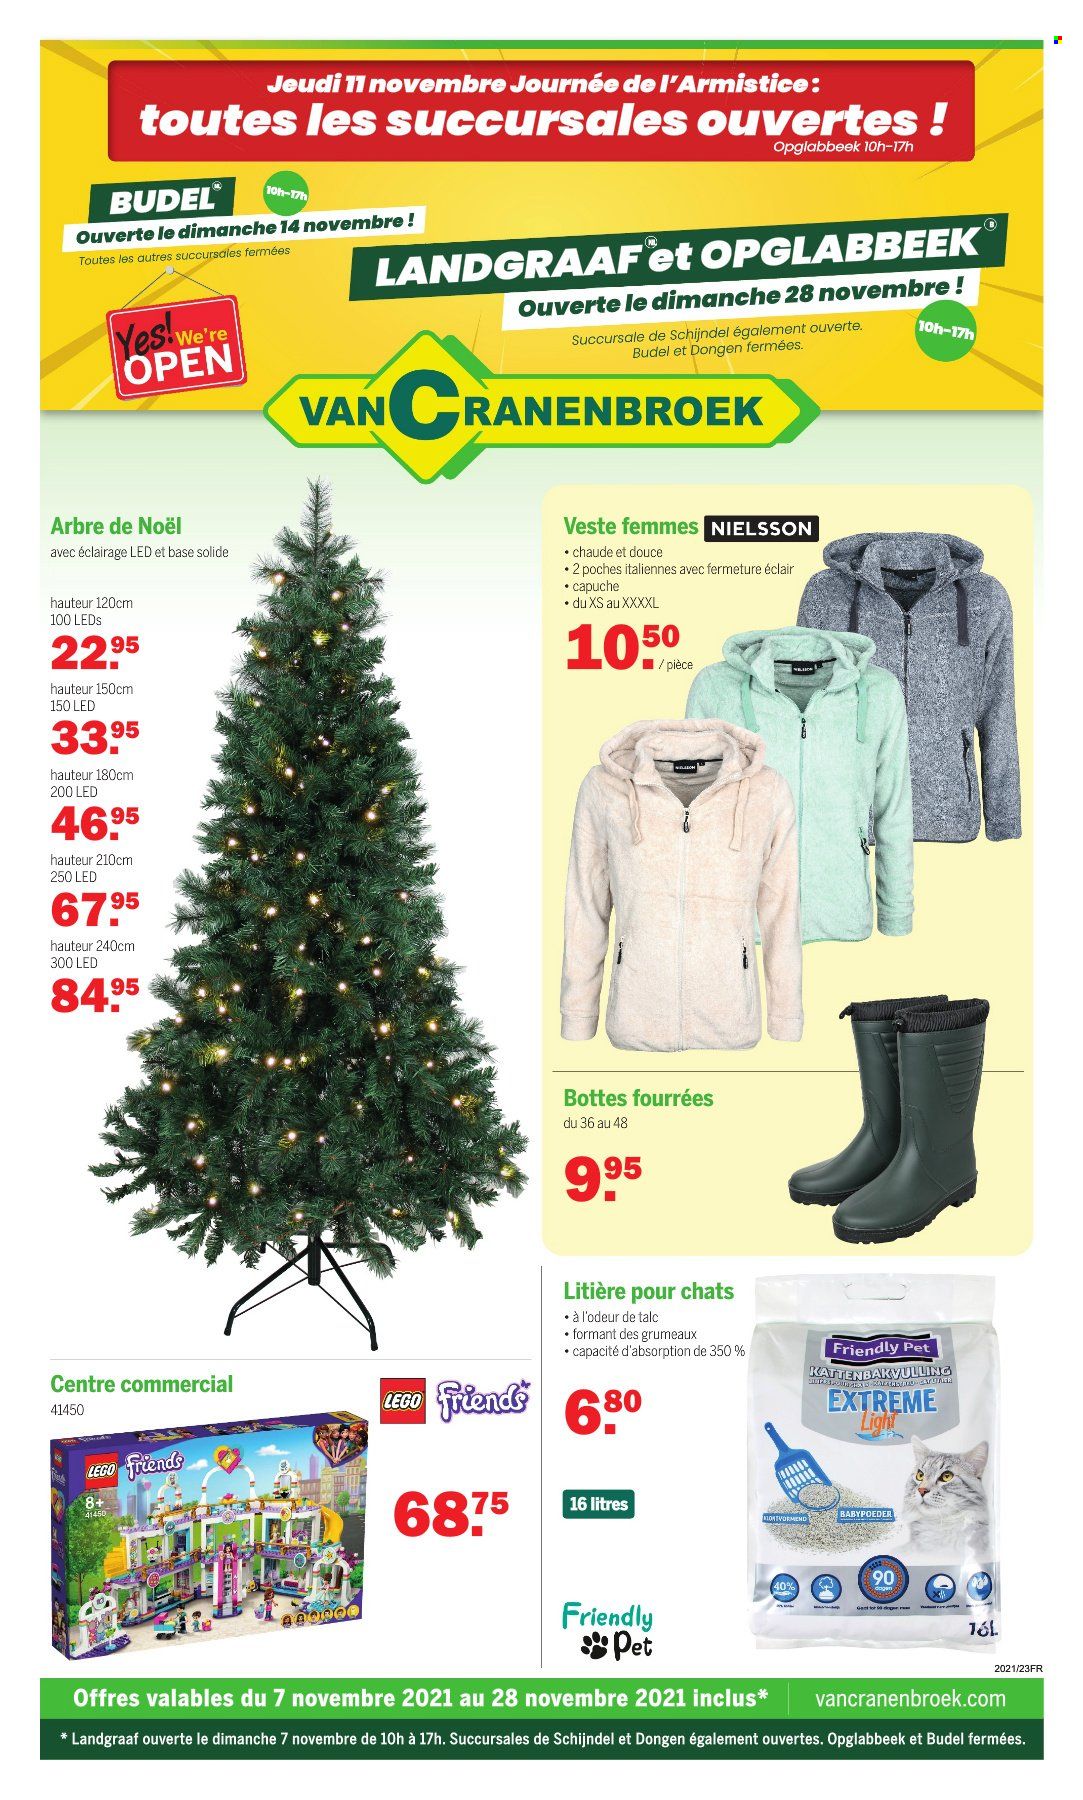 thumbnail - Catalogue Van Cranenbroek - 07/11/2021 - 28/11/2021 - Produits soldés - bottes, litière, veste, Lego, Lego Friends. Page 1.